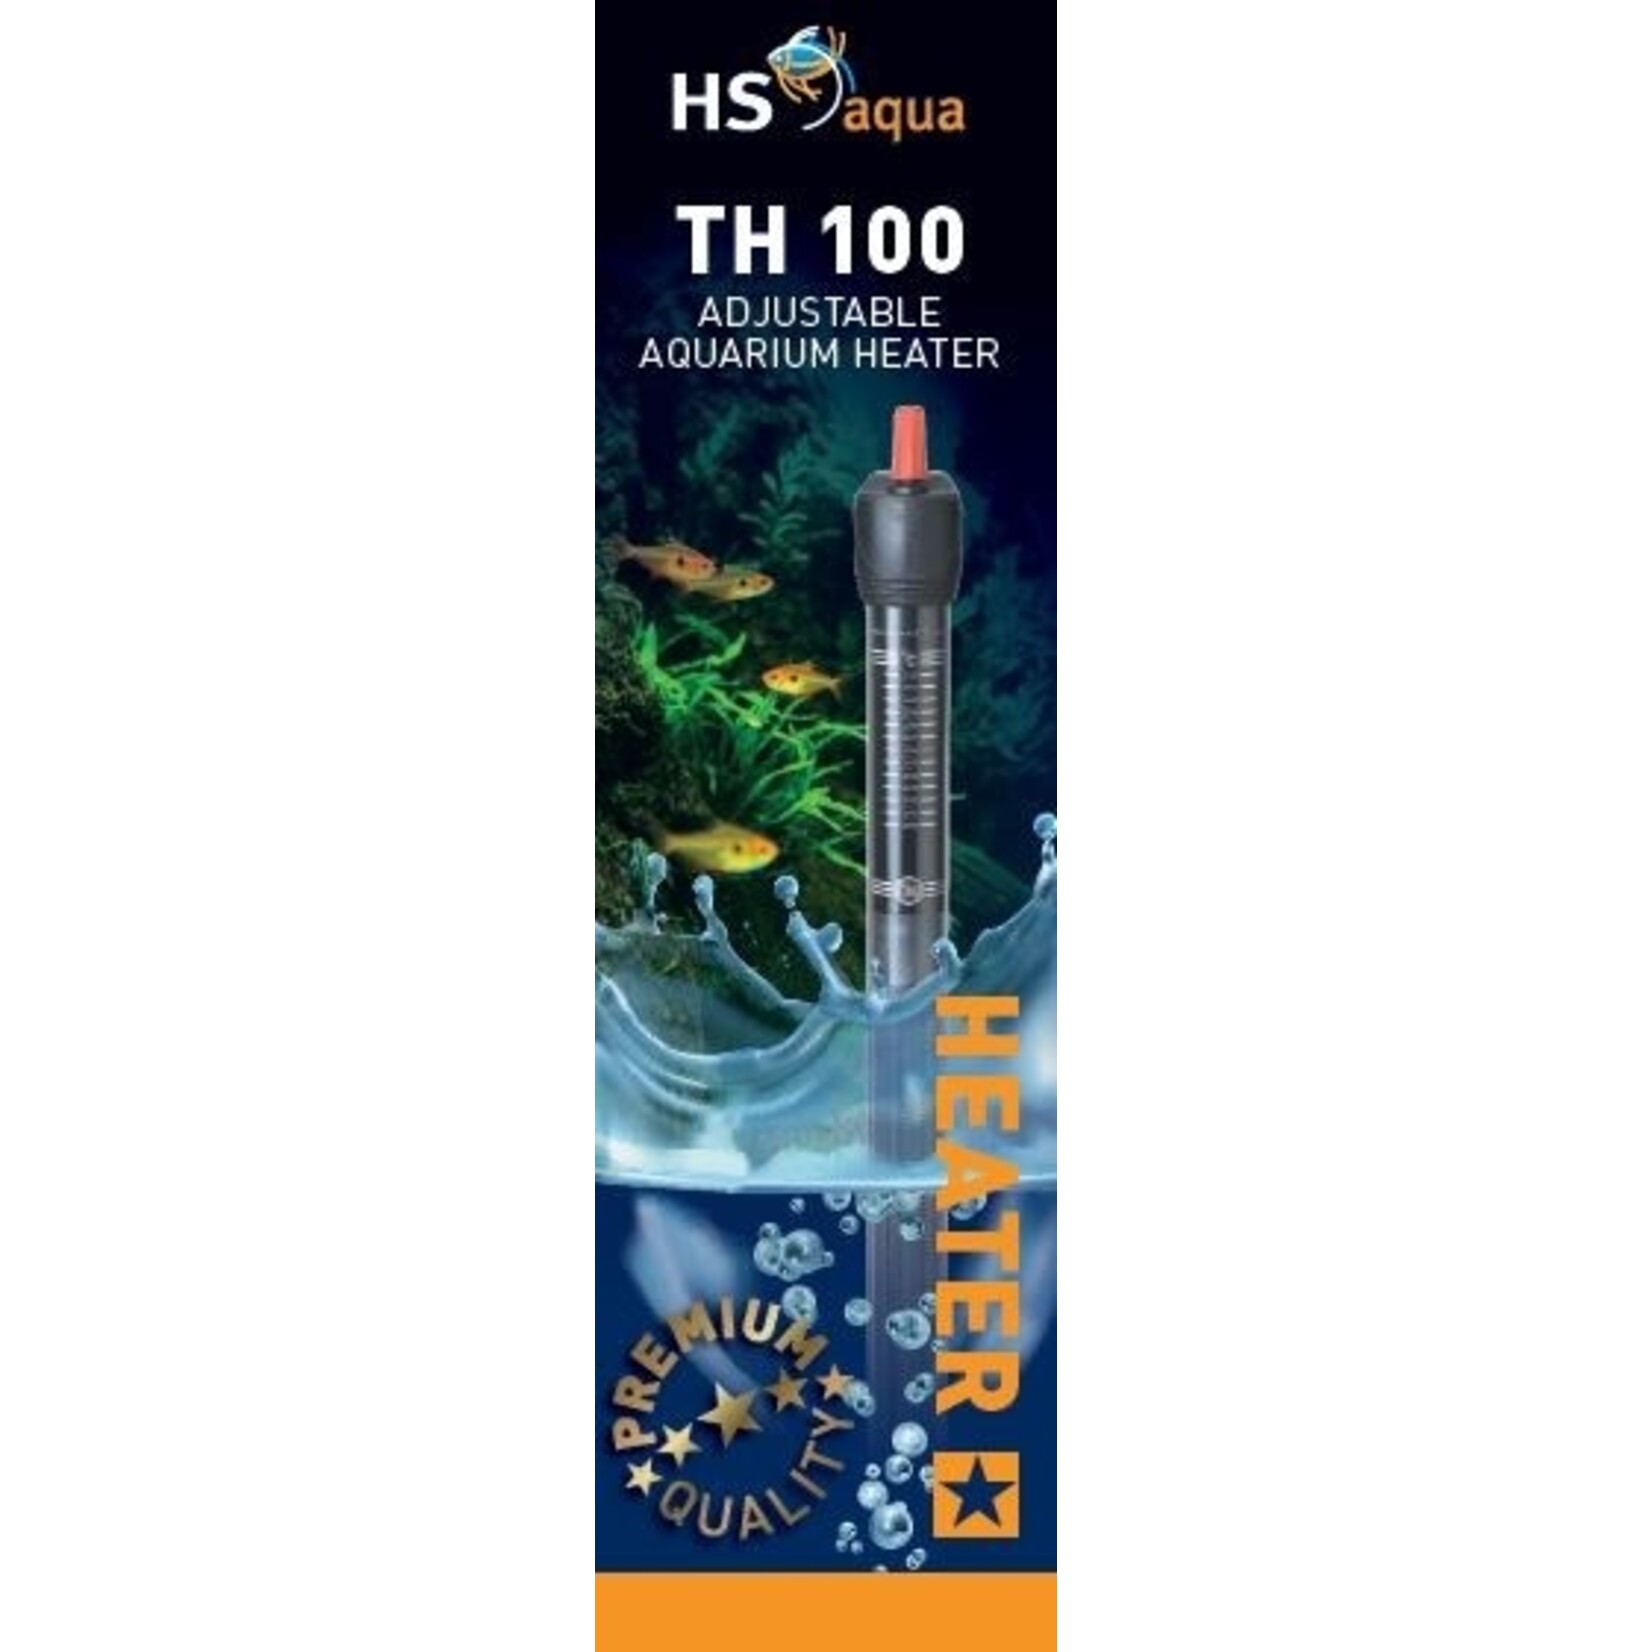 HS Aqua Glass aquarium heater & protector th-100